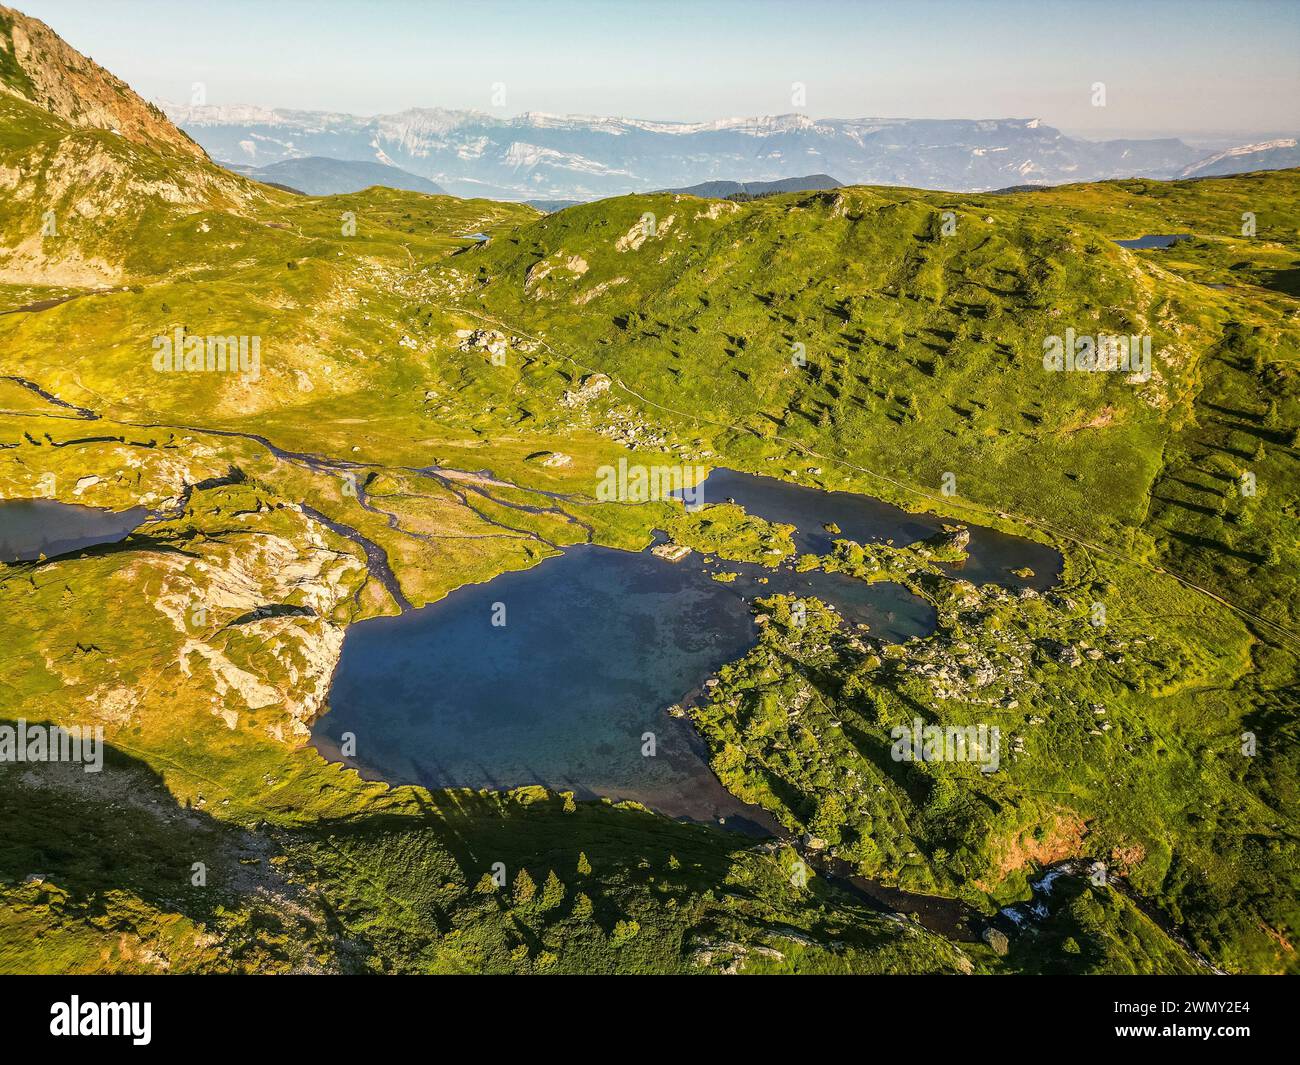 Francia, Isère, Matheysine, massiccio di Taillefer, le Plateau des Lacs (2068 m) par le sentier de grande randonnée GR 50, lac Noir et lac de l'Agneau (vista aerea) Foto Stock